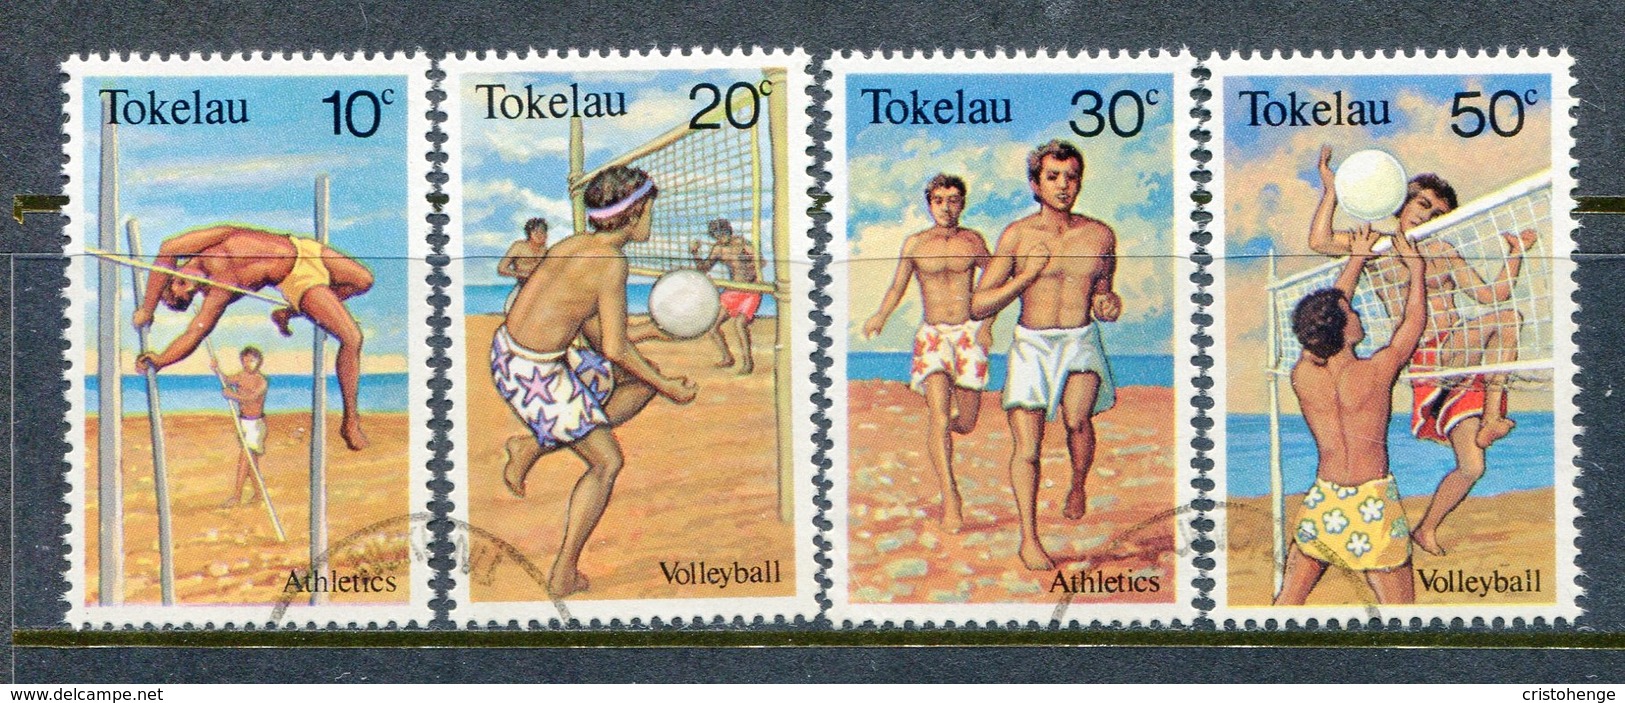 Tokelau 1981 Sports Set Used (SG 77-80) - Tokelau